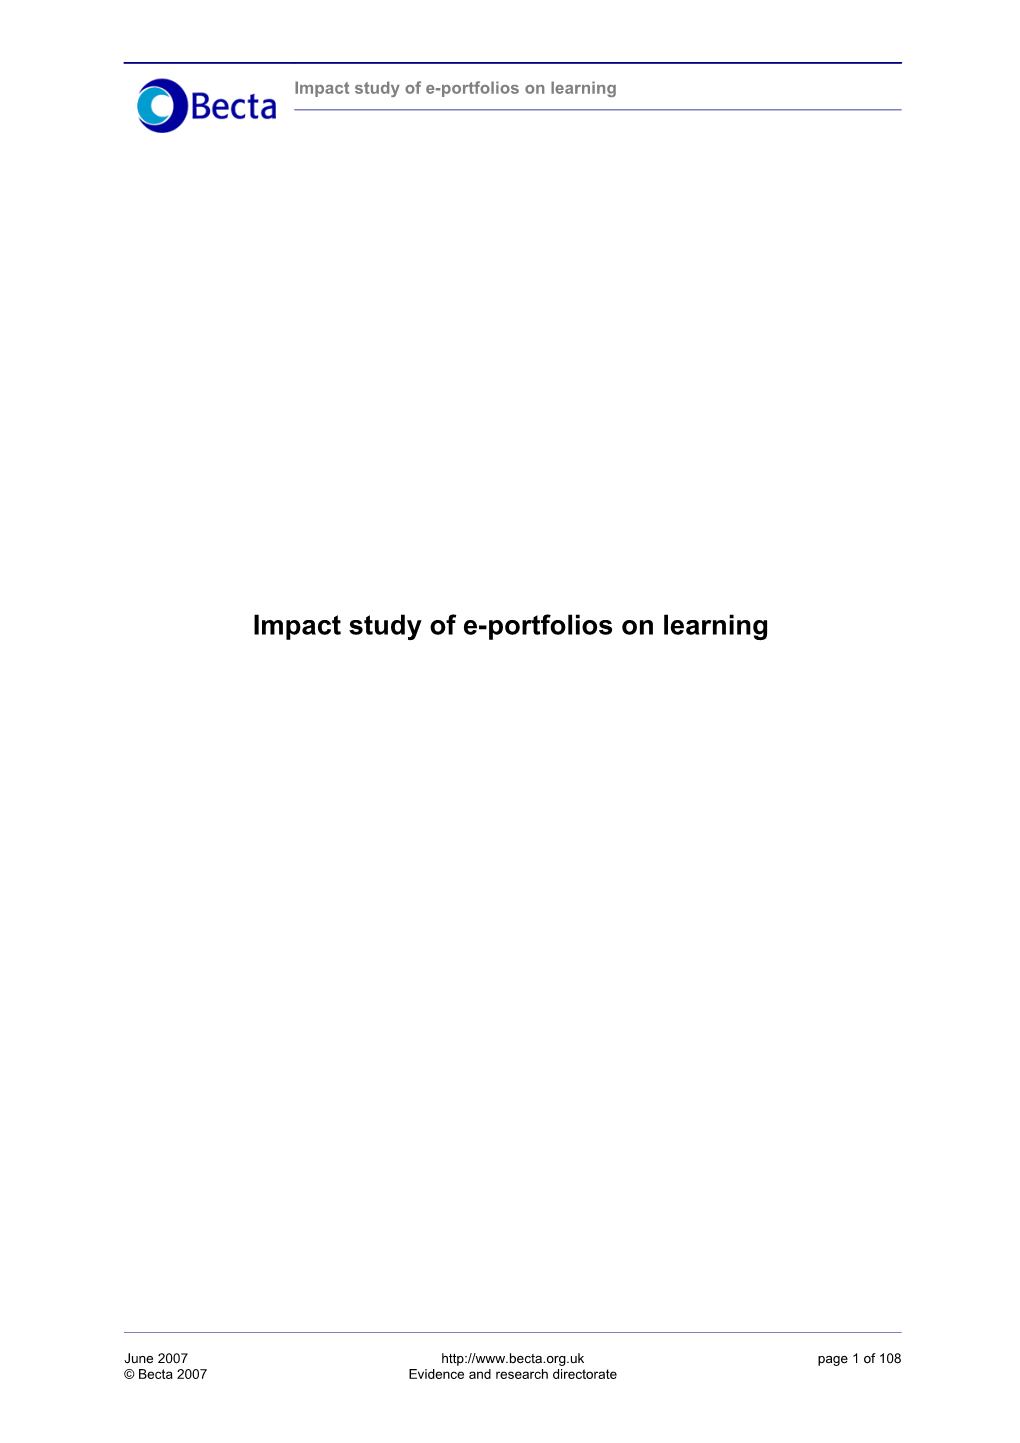 Impact Study of E-Portfolios on Learning